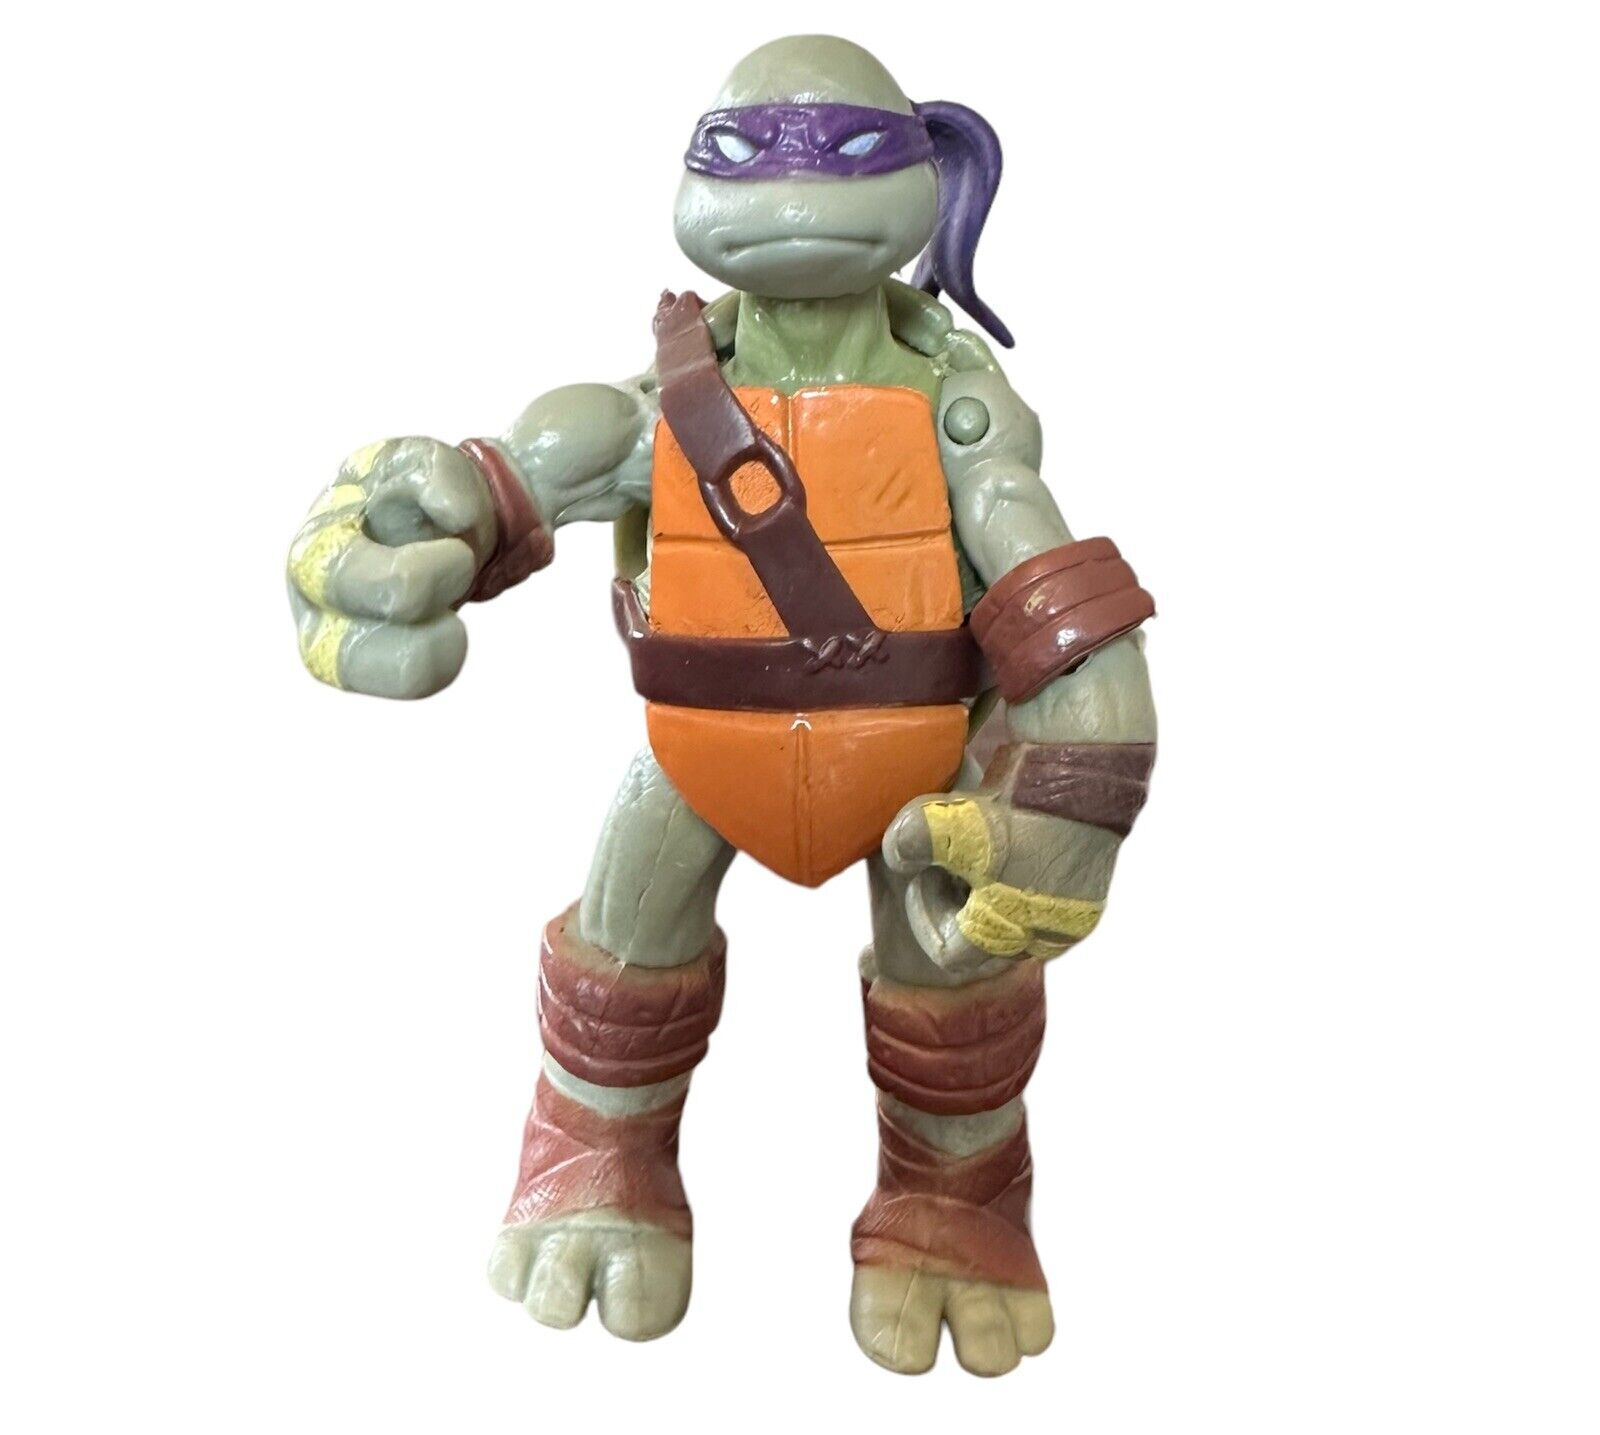 2012 Viacom Teenage Mutant Ninja Turtles TMNT Donatello Action Figure 4.5